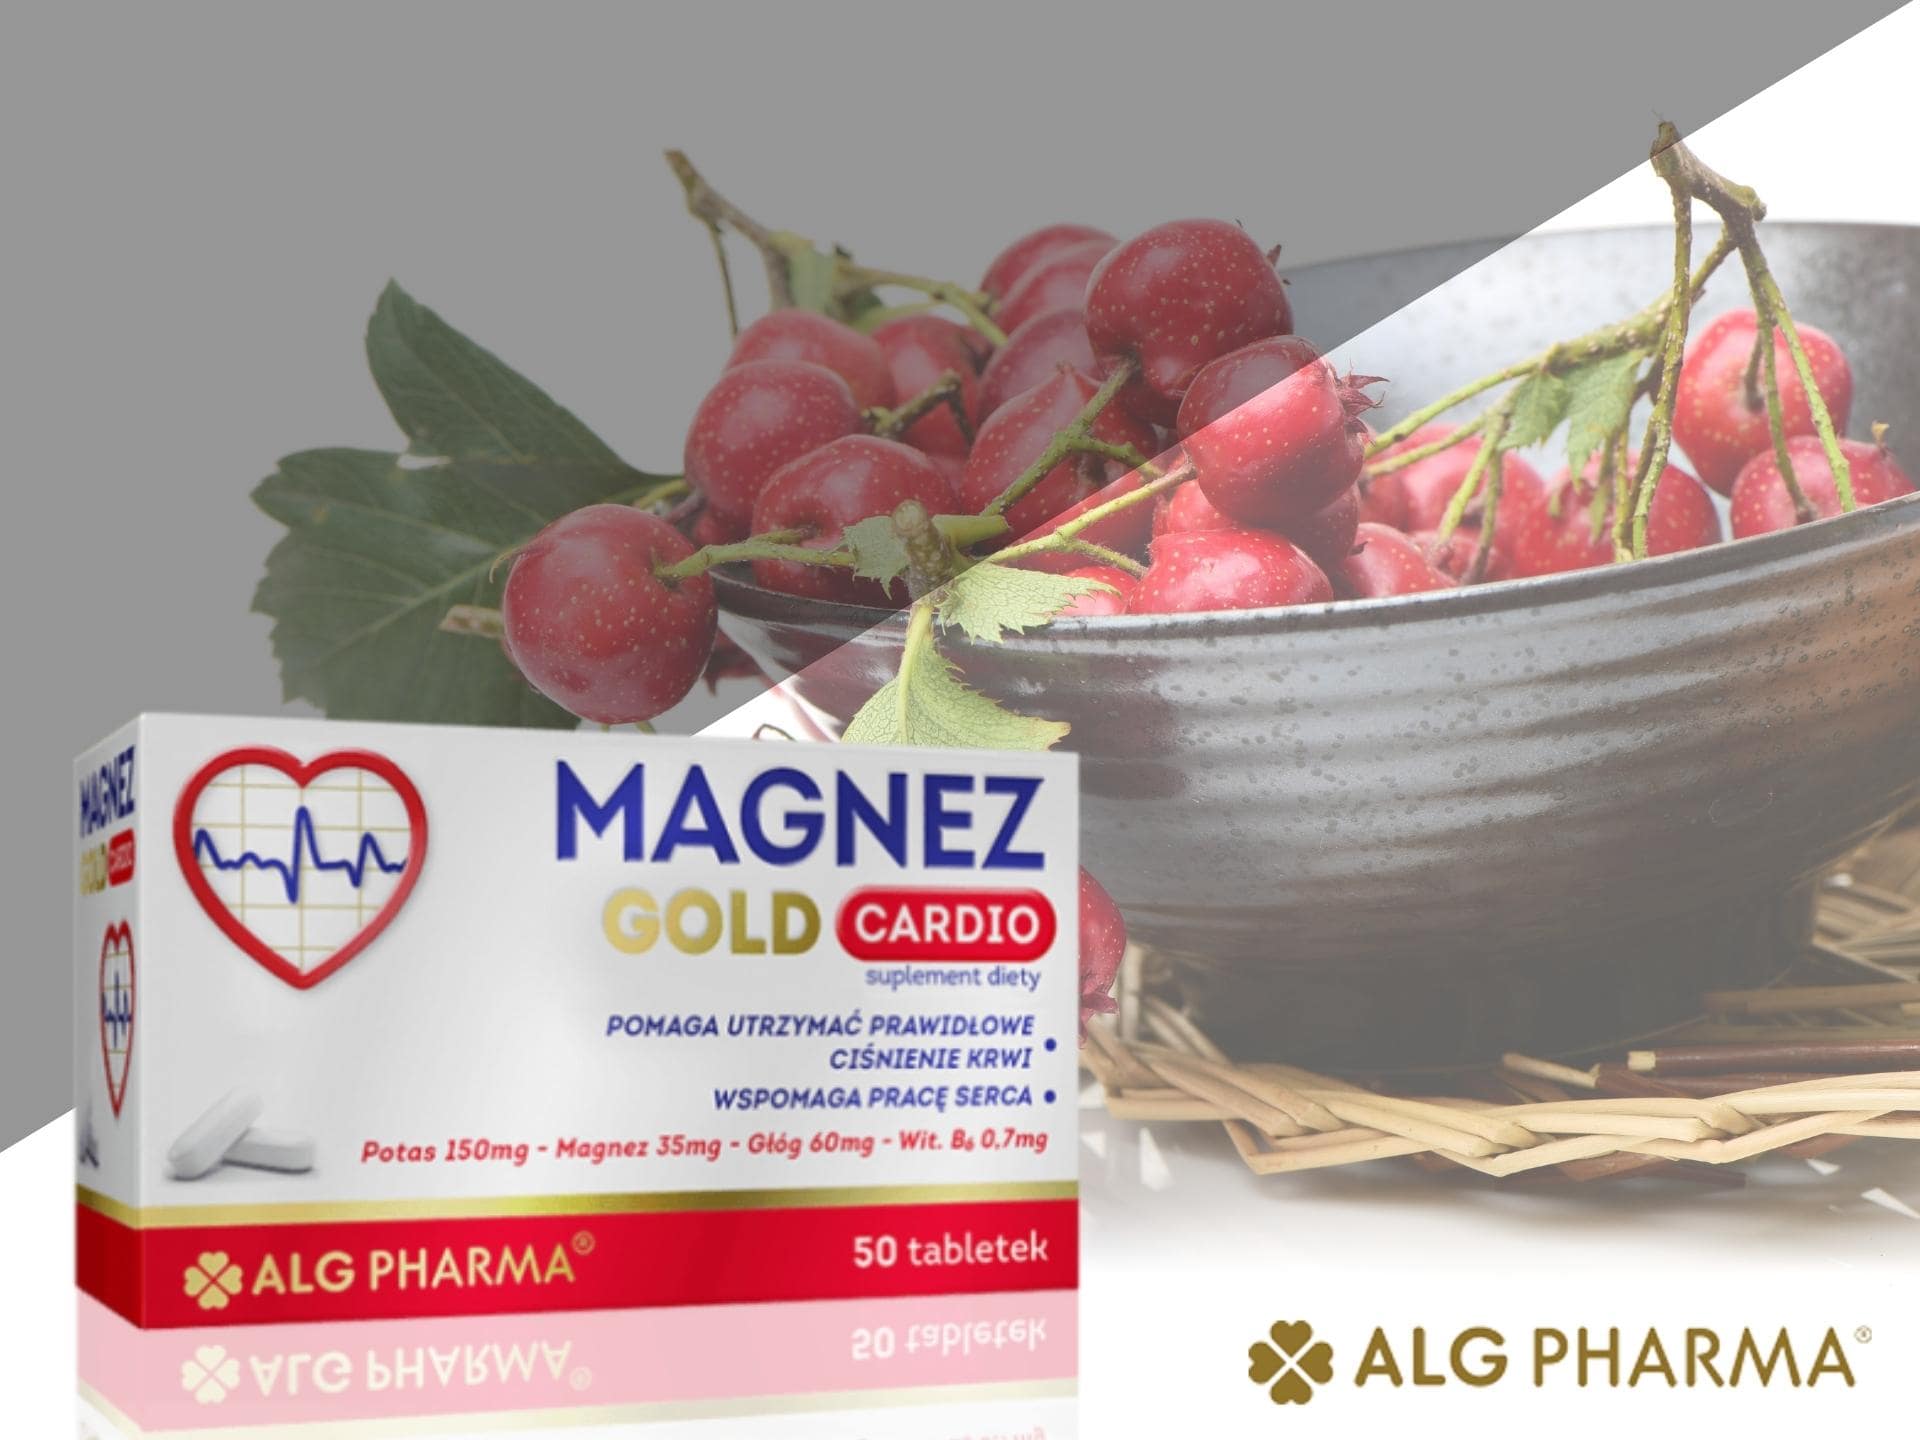 ALG Pharma - Magnez na zdrowe serce